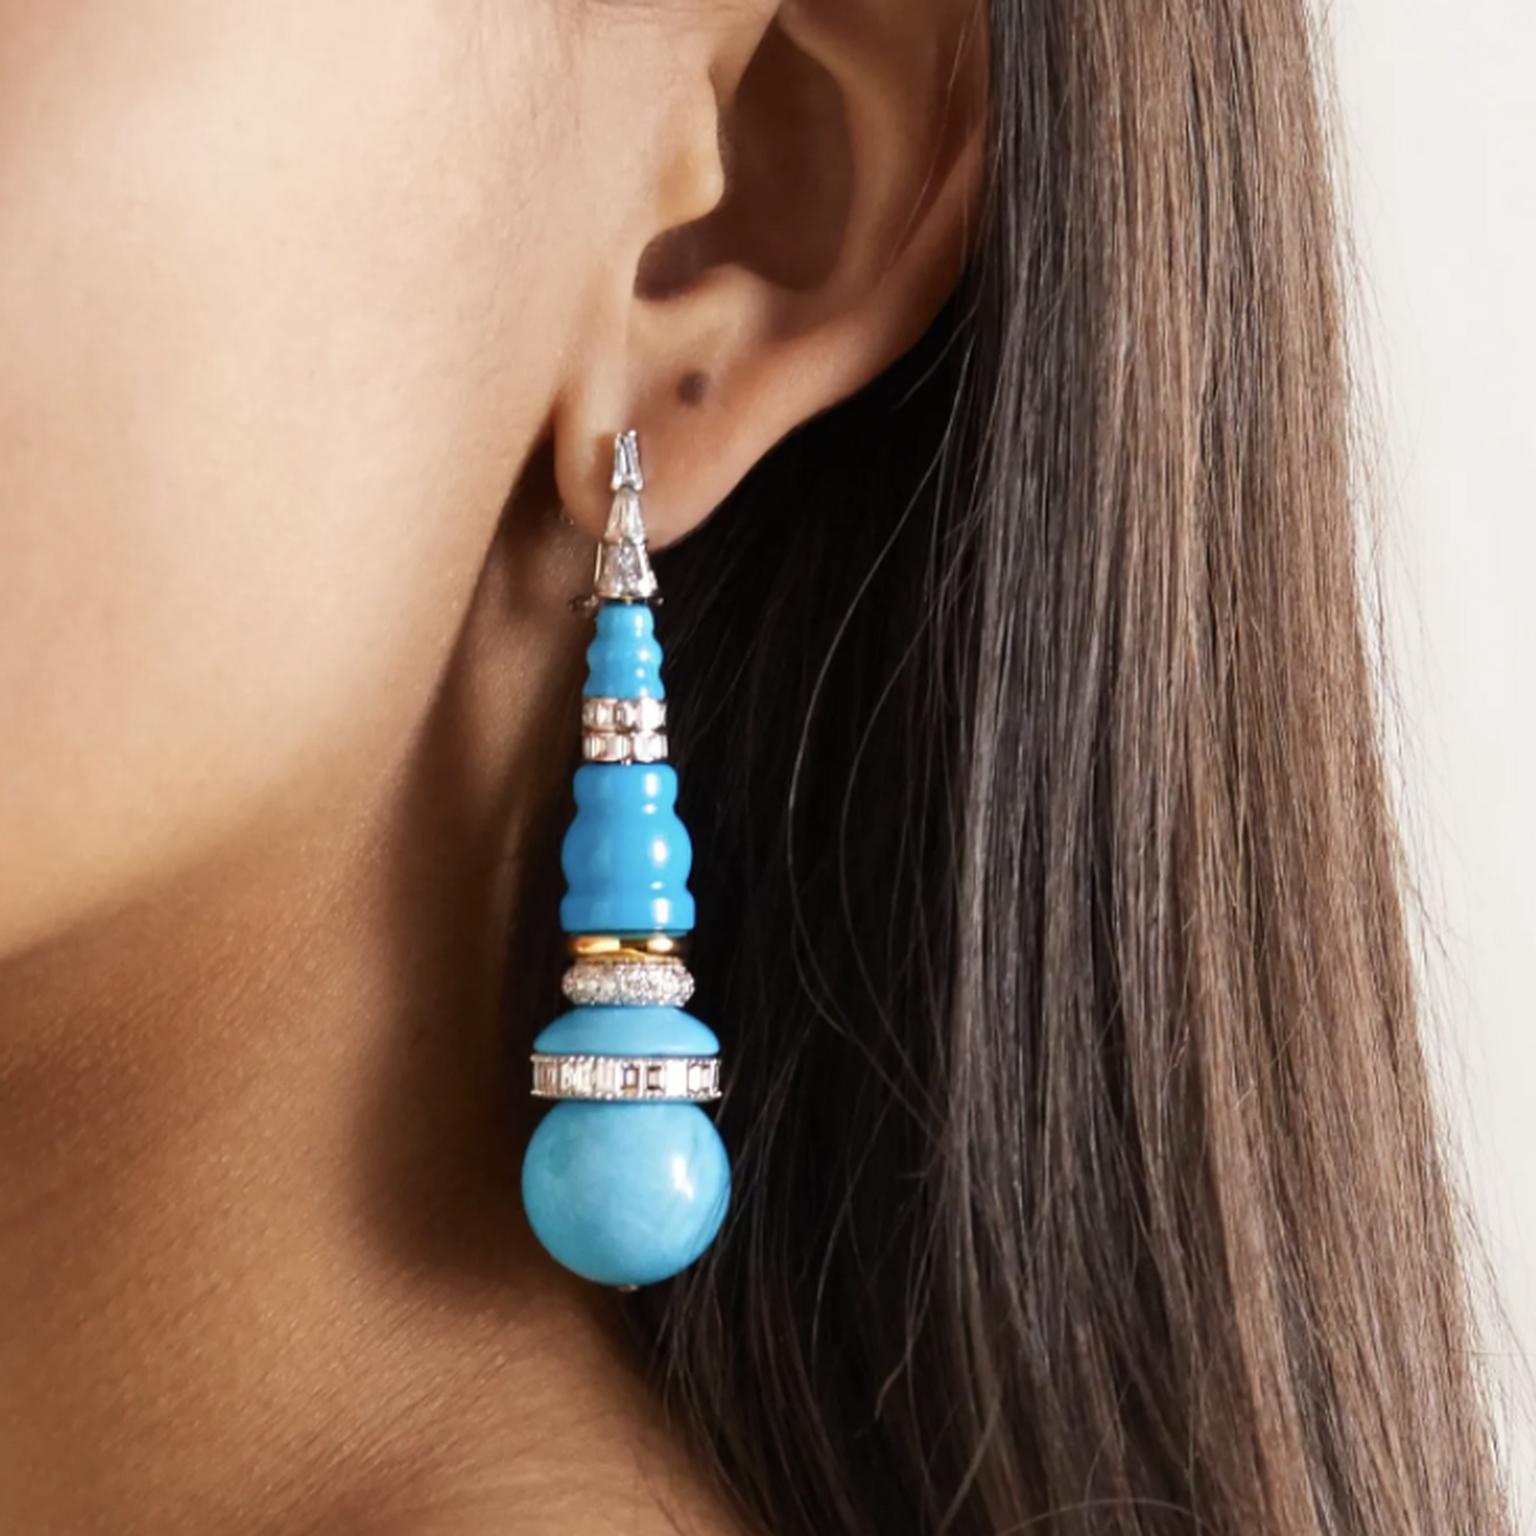 Turquoise earrings by Bina Goenka on model